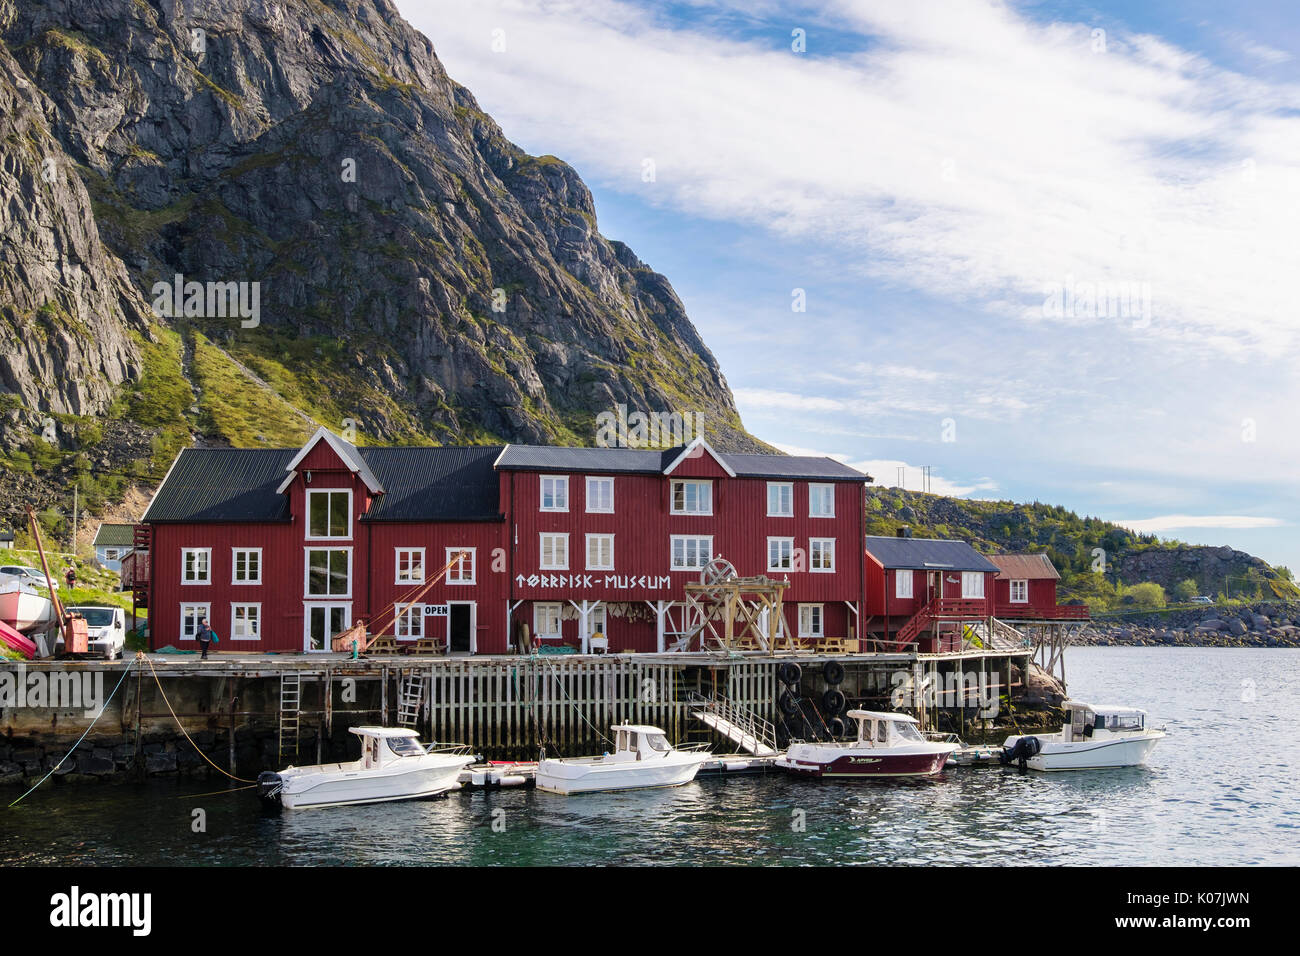 Torrfisk Musée du Poisson avec des bateaux dans le port dans village de pêcheurs de Å, l'île de Moskenes, Moskenesøya, îles Lofoten, Nordland, Norvège, Scandinavie Banque D'Images